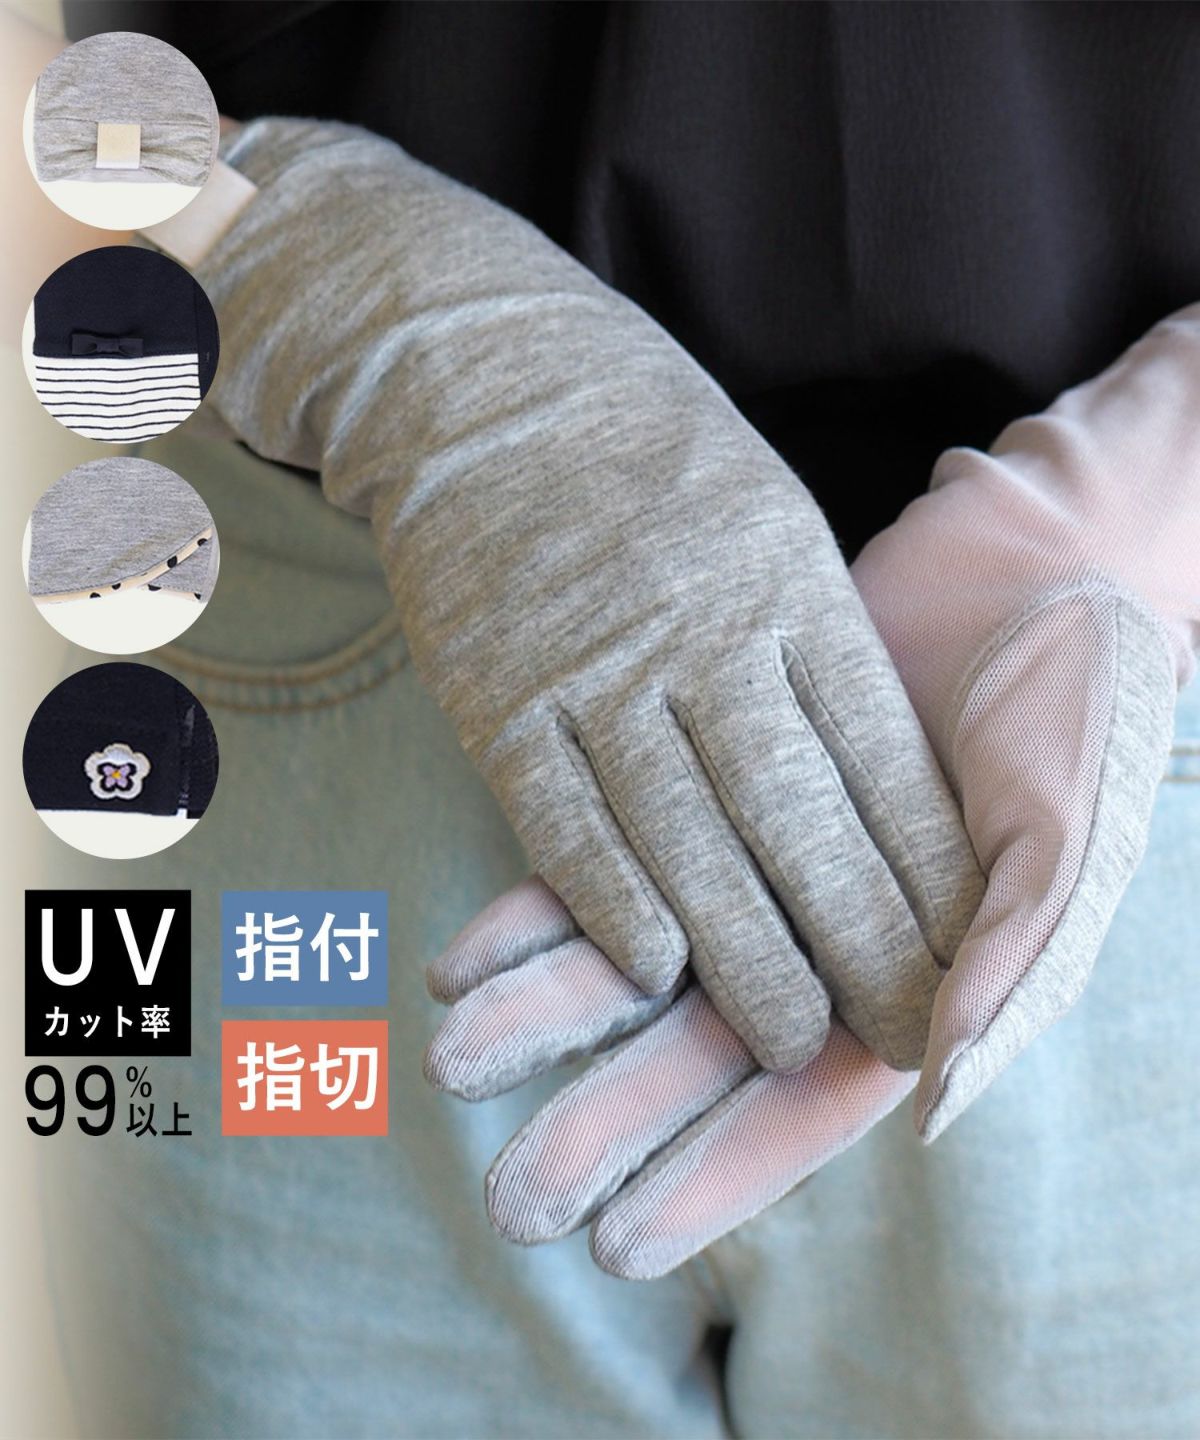 UV手袋